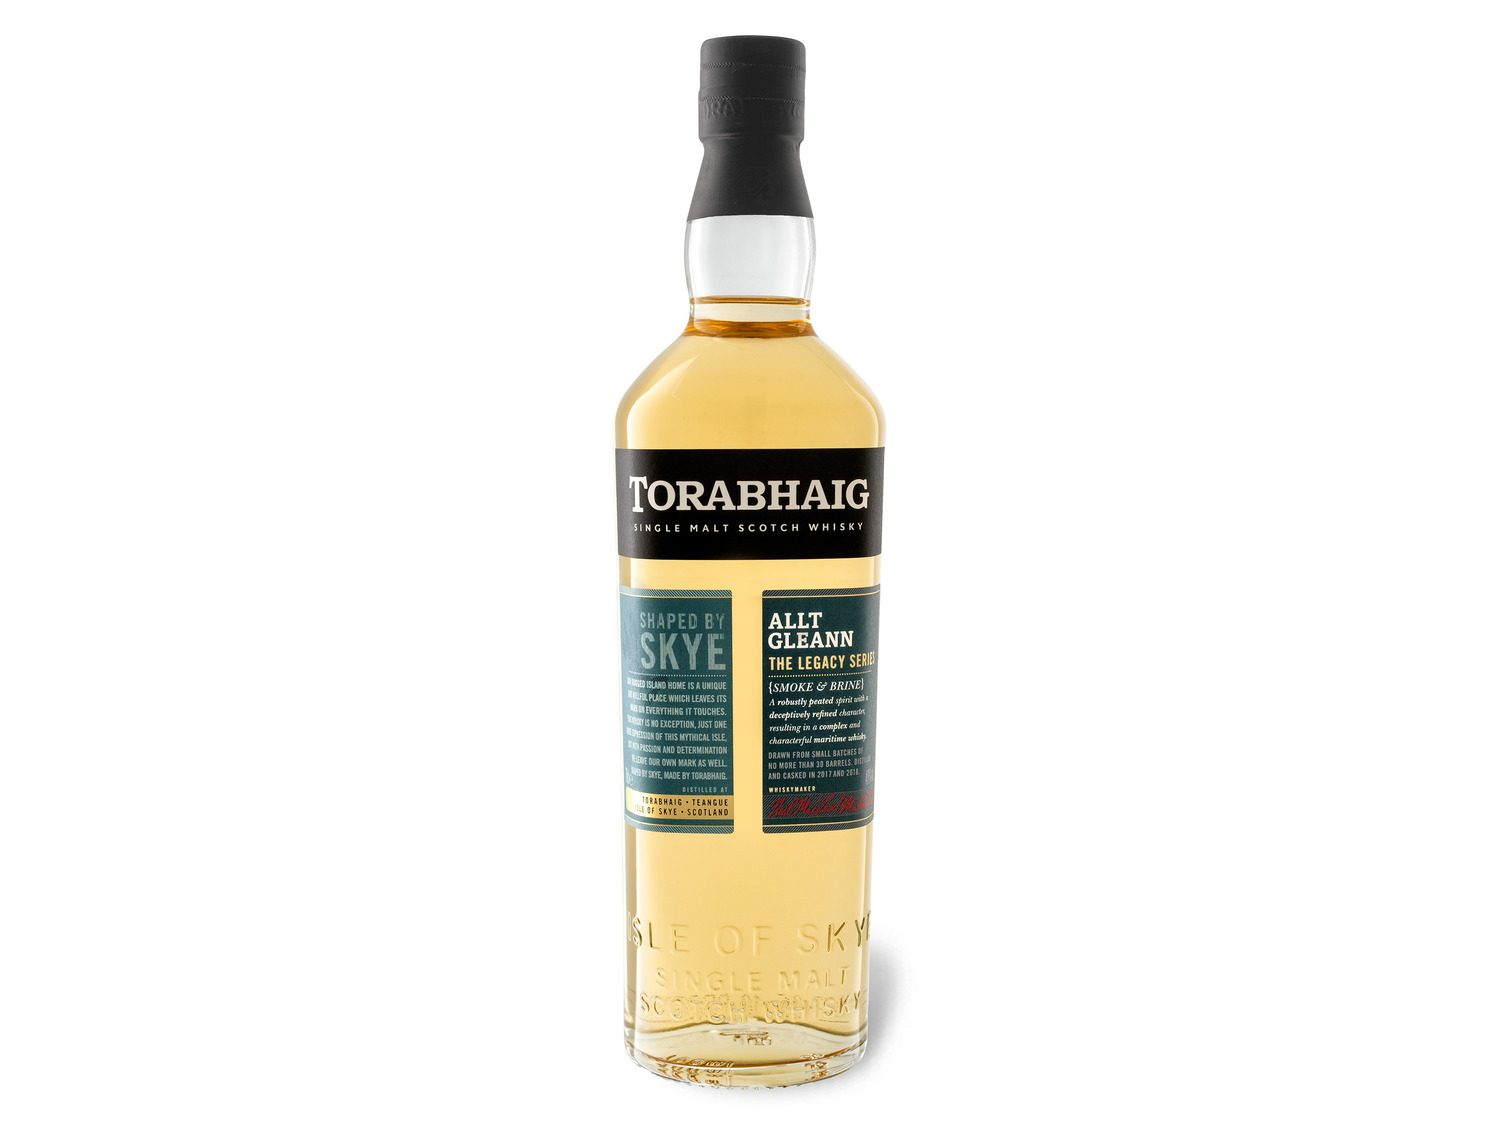 The Scotch Gleann Whisky Le… Single Torabhaig Malt Allt